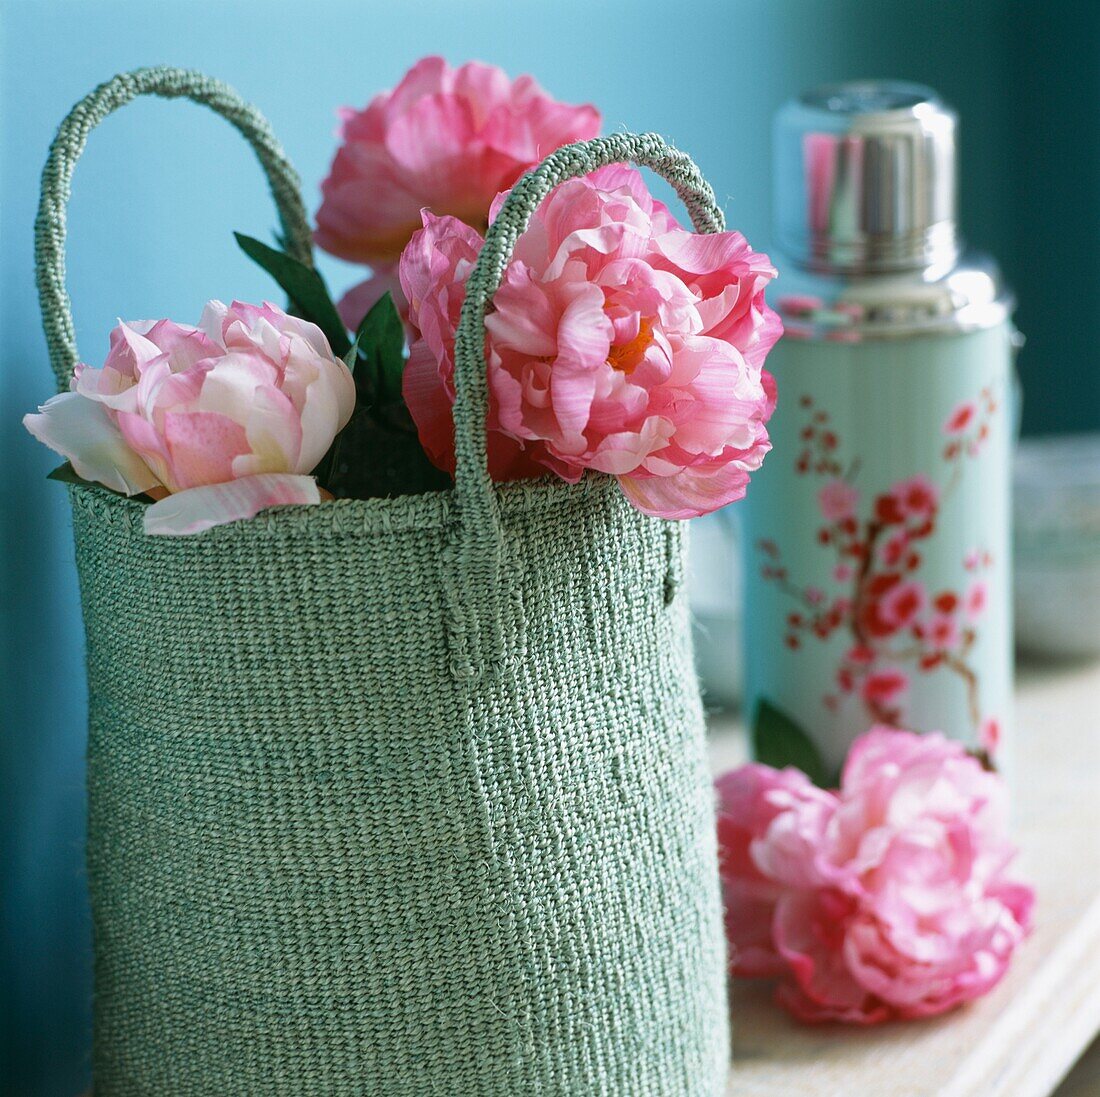 Rosa Blumen in pastellgrüner Einkaufstasche mit floral gemustertem Flachmann